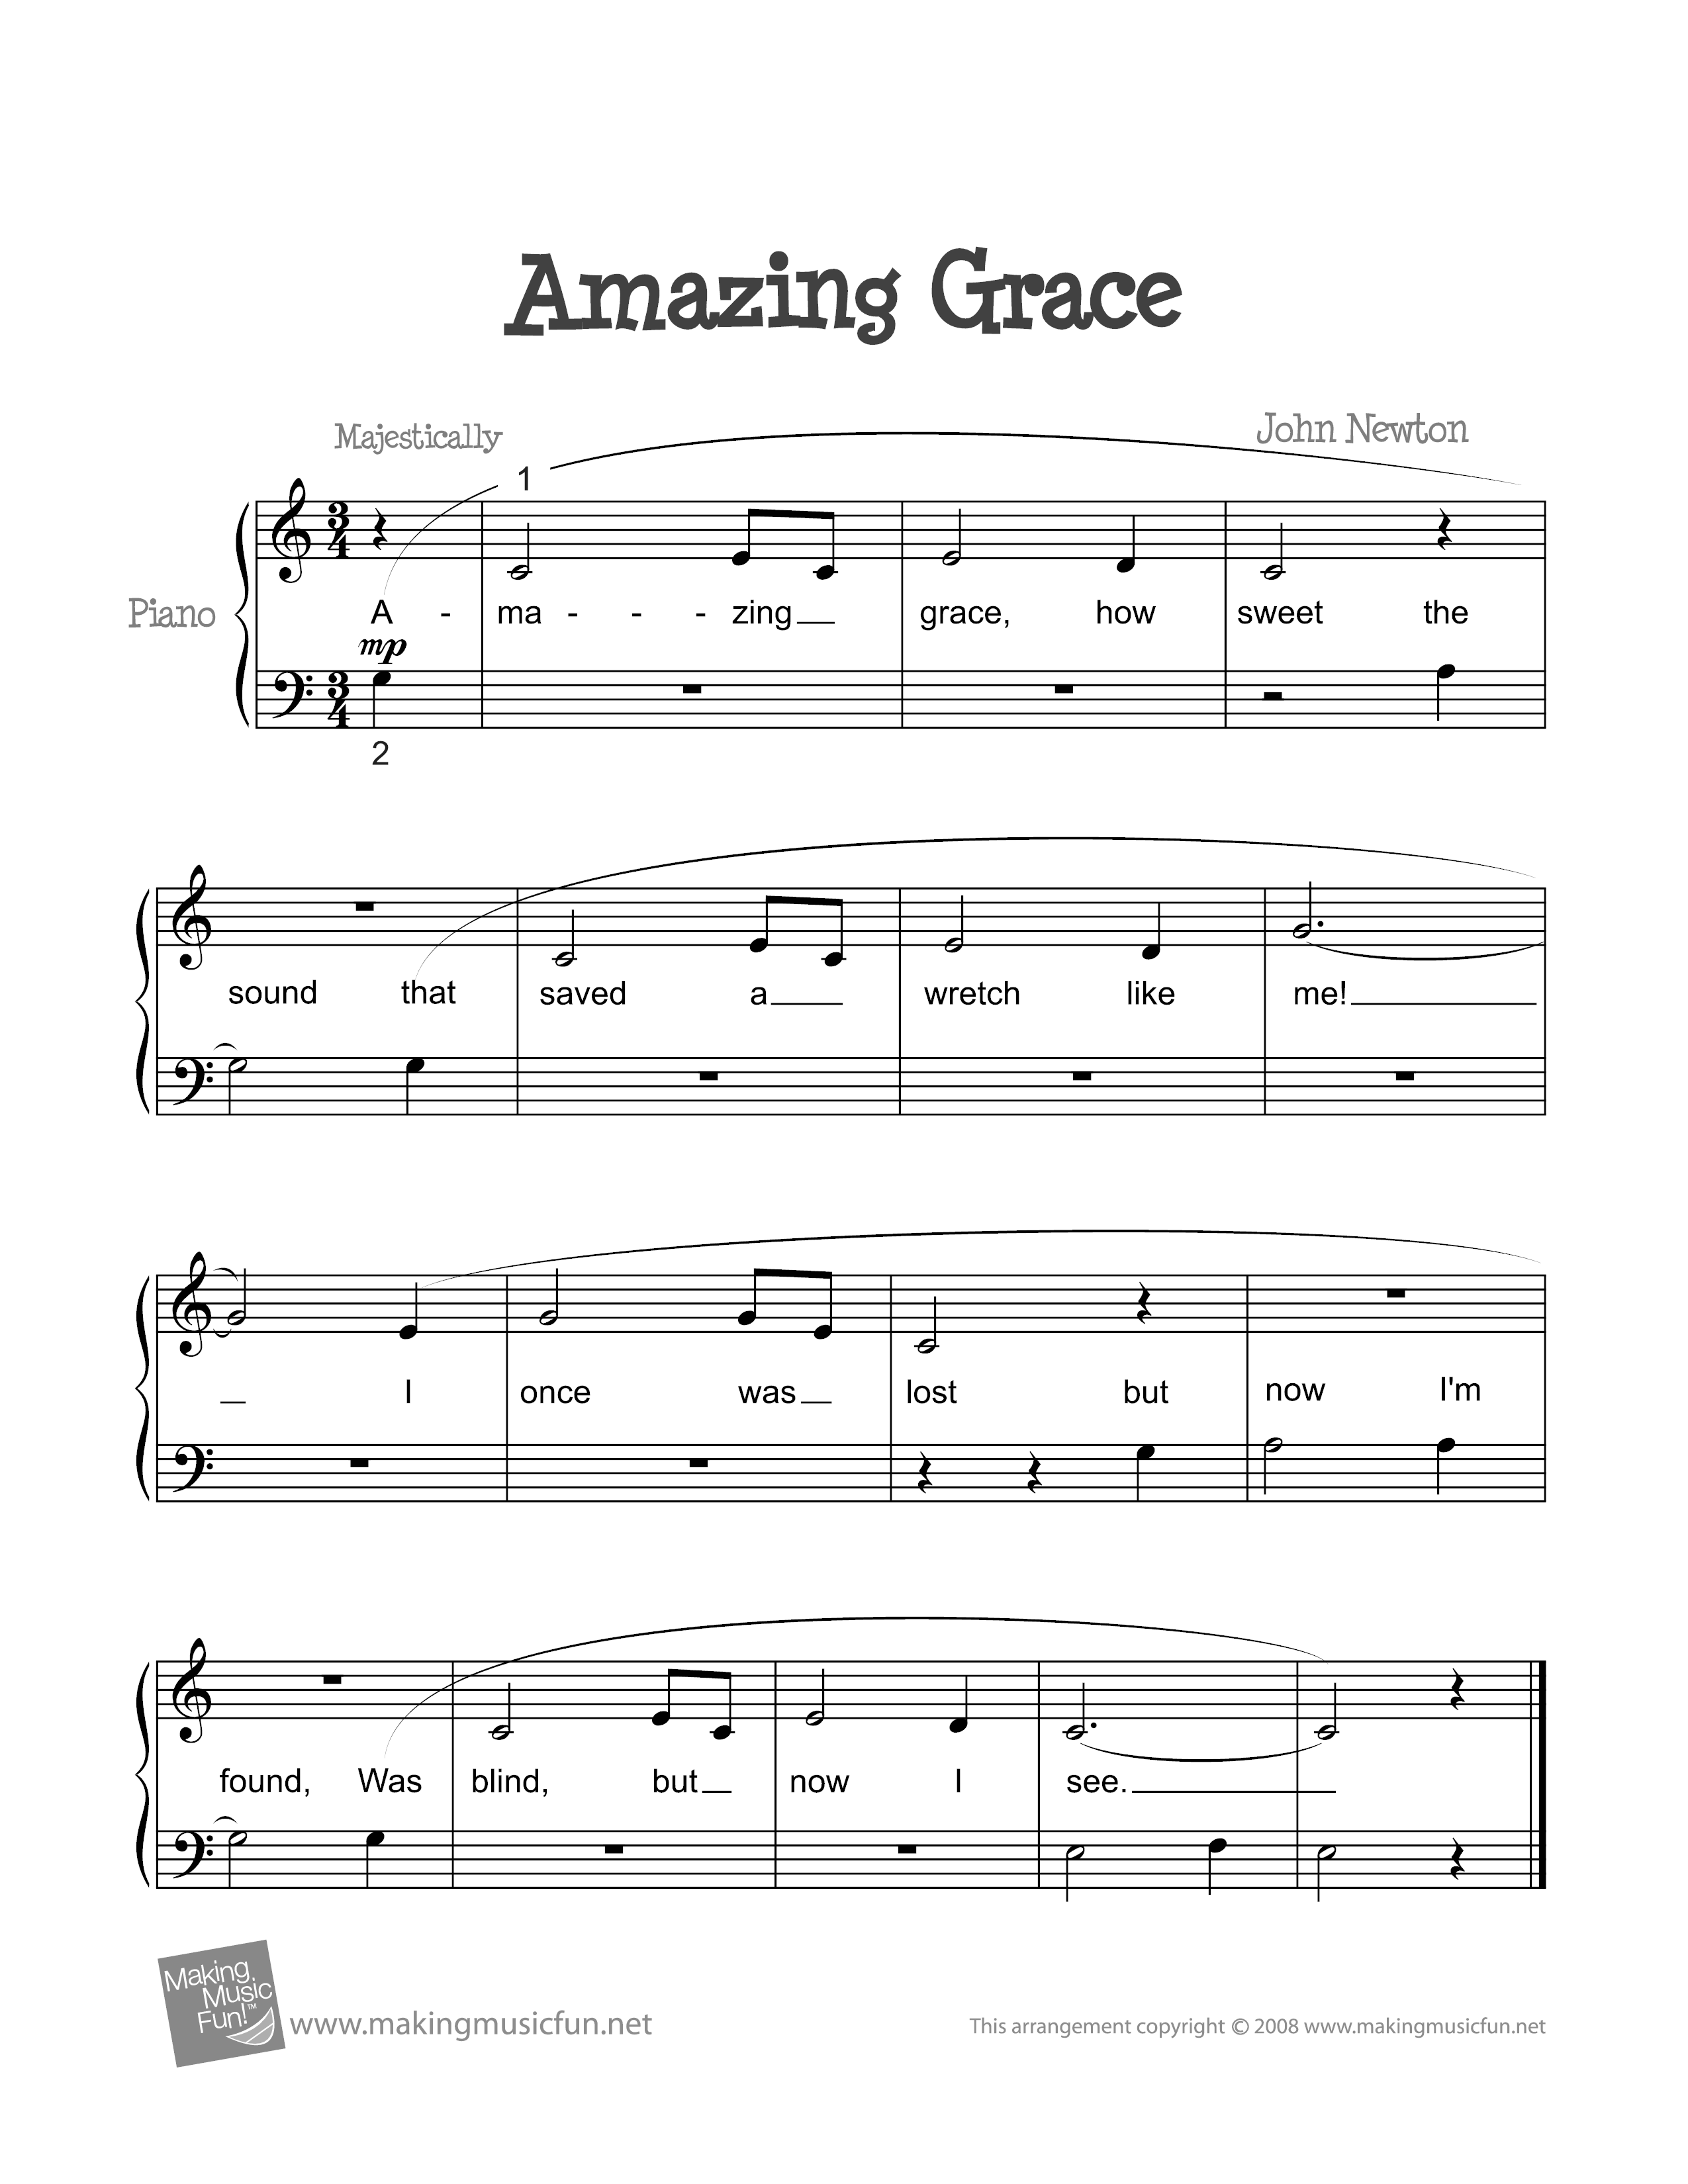 Amazing Grace Hymnal Sheet Music